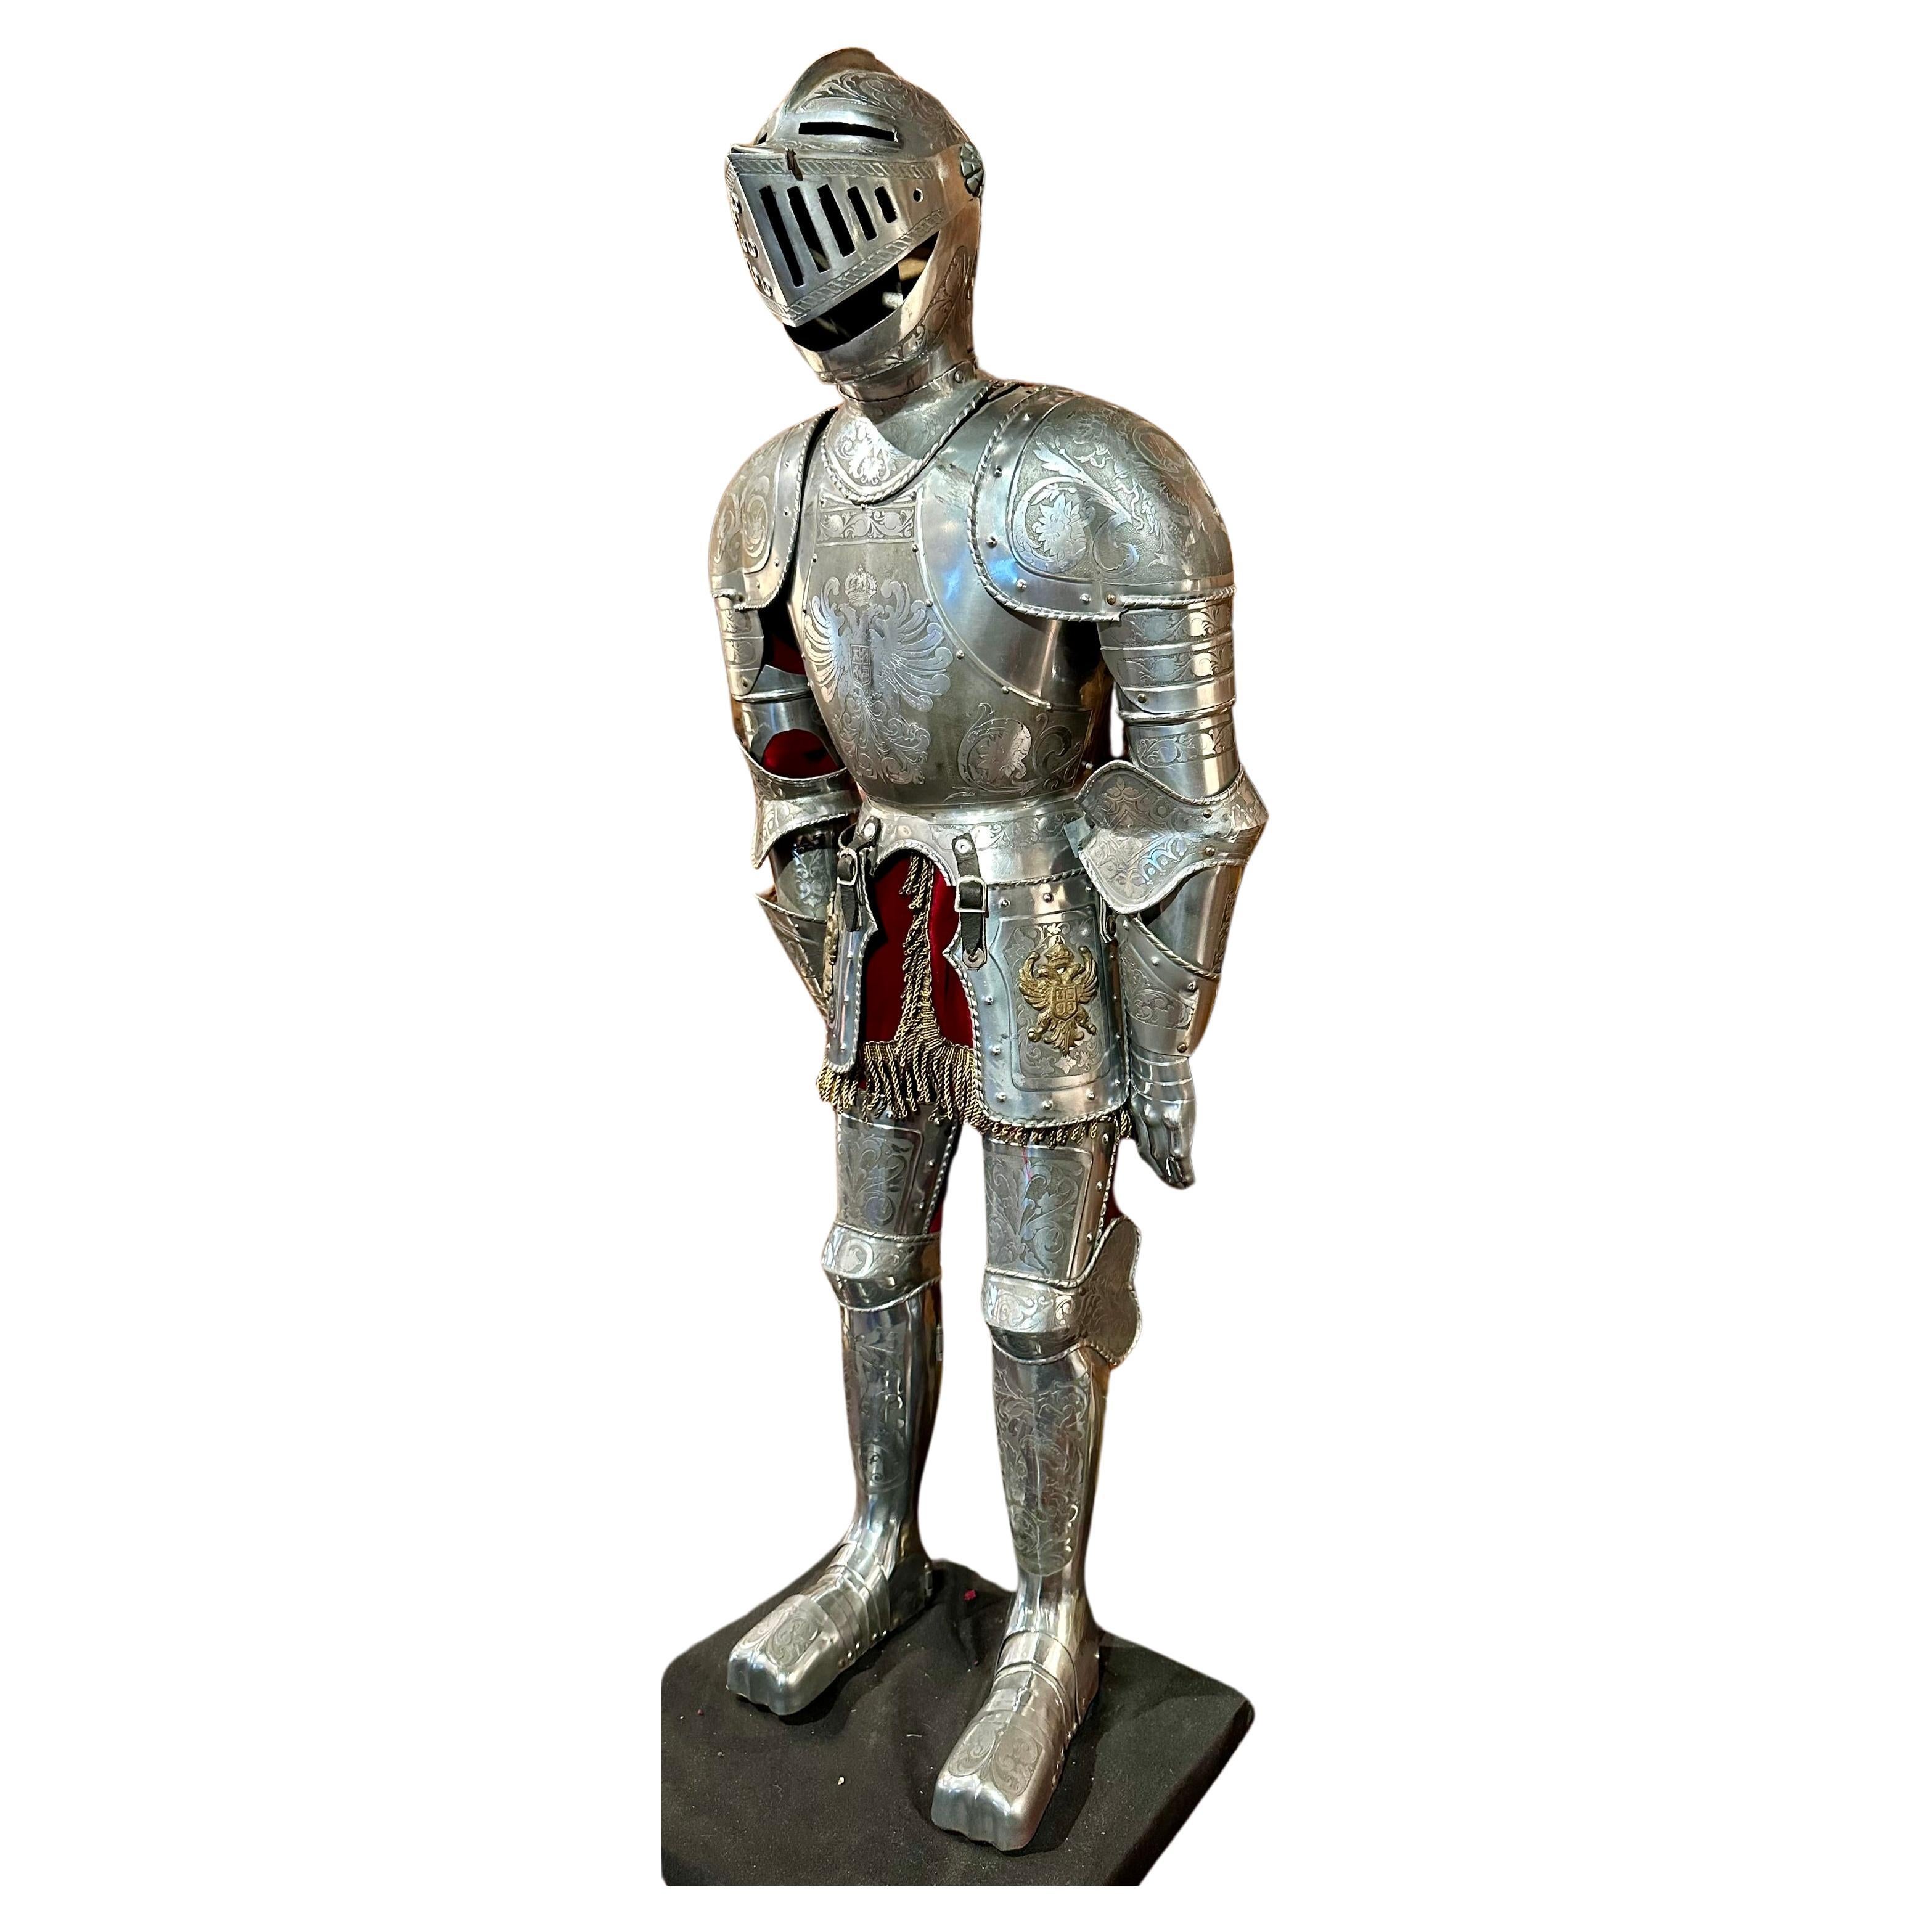 Anglais Hand Made Miniature Modèle réduit Armoiries de Cavalier, Armure de chevalier médiéval à charnière